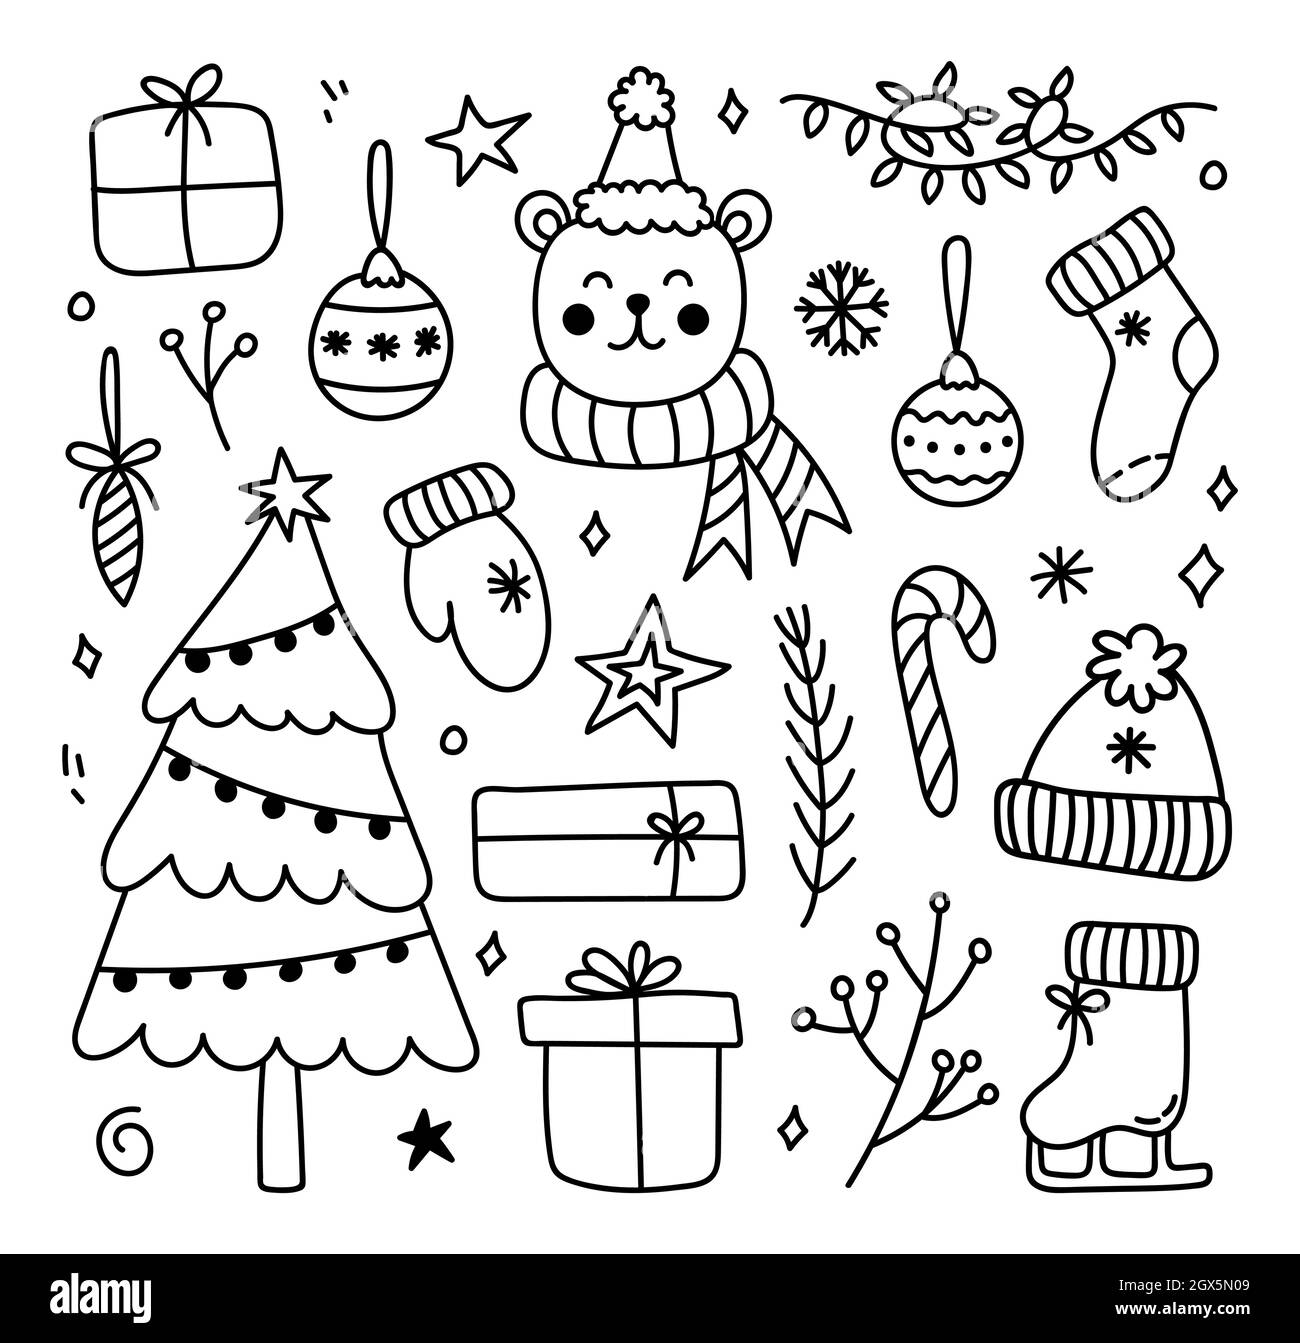 Set von Winterkritzeln - ein Weihnachtsbaum, eine Girlande, Geschenke, Weihnachtsbälle, Zweige, Ein warmer Hut, Socken, Fäustlinge und ein süßer Bär. Vektorgrafik Cartoon handgezeichnete Illustration. Perfekt für Urlaubsdesigns. Stock Vektor